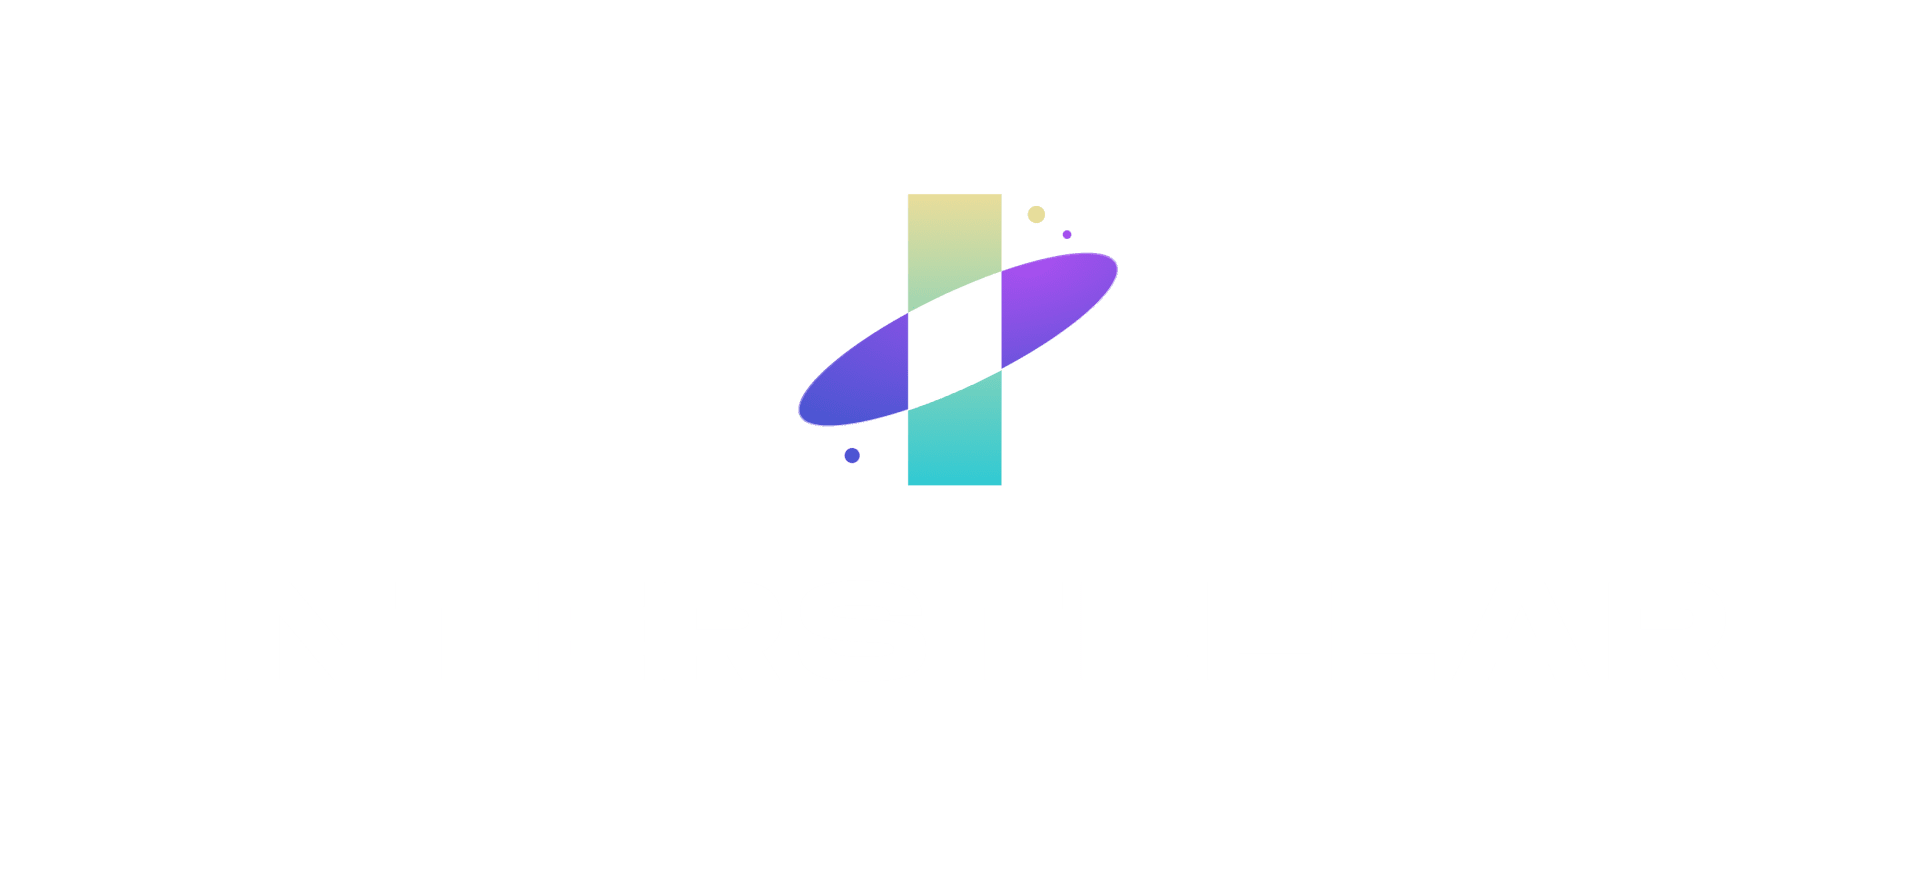 INTERSTELLAR logo